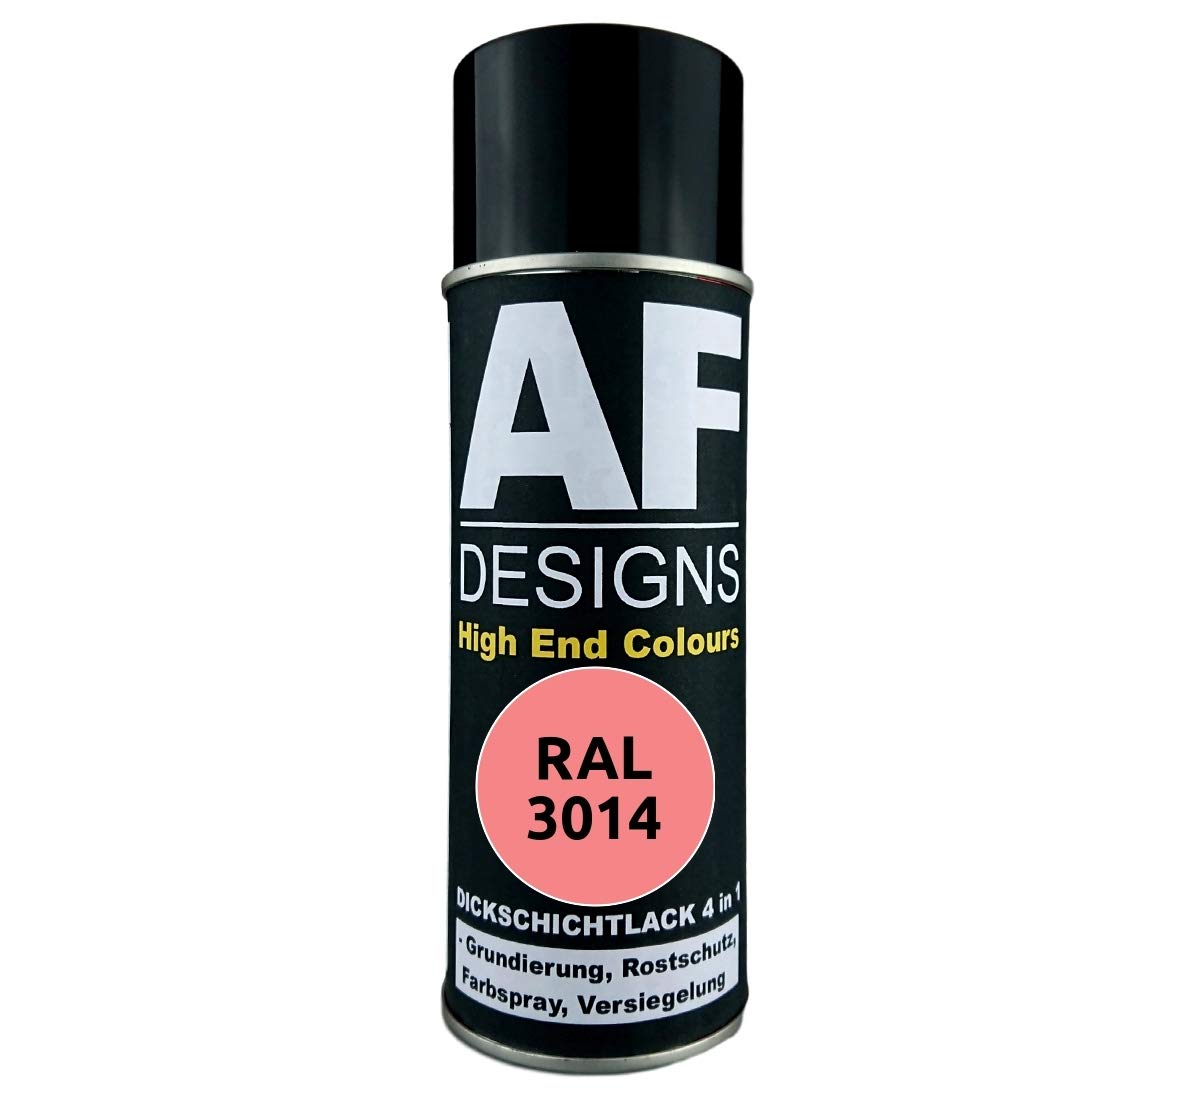 4 in 1 RAL 3014 Altrosa Dickschichtlack Lack Spray Spraydose von Alex Flittner Designs